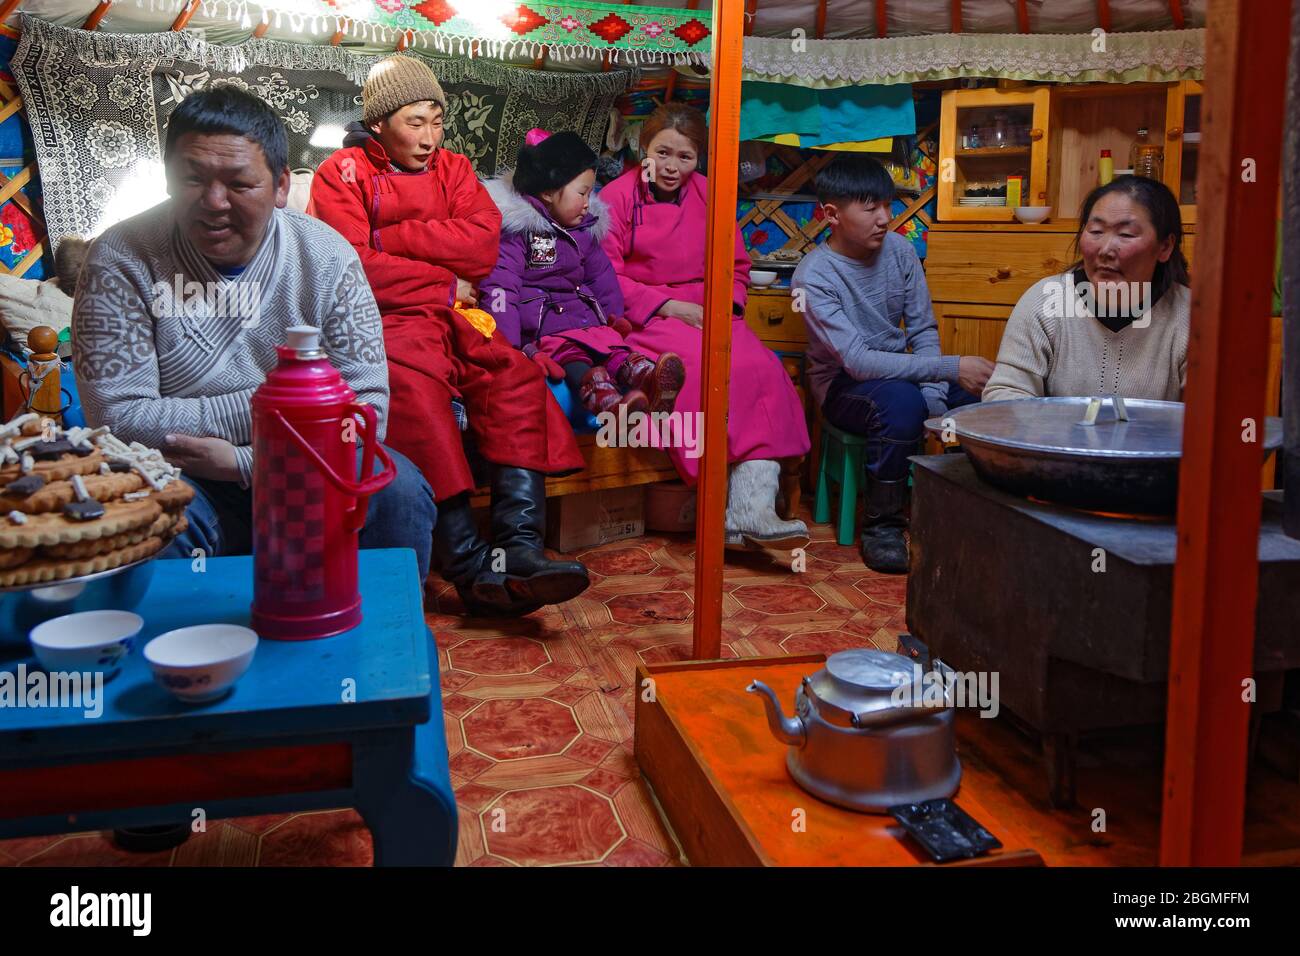 KHATGAL, MONGOLIA, 25 de febrero de 2020 : el pueblo mongol visita a sus familiares y amigos en sus yurts durante Tsagaan Tsar, el nuevo año mongol. Foto de stock